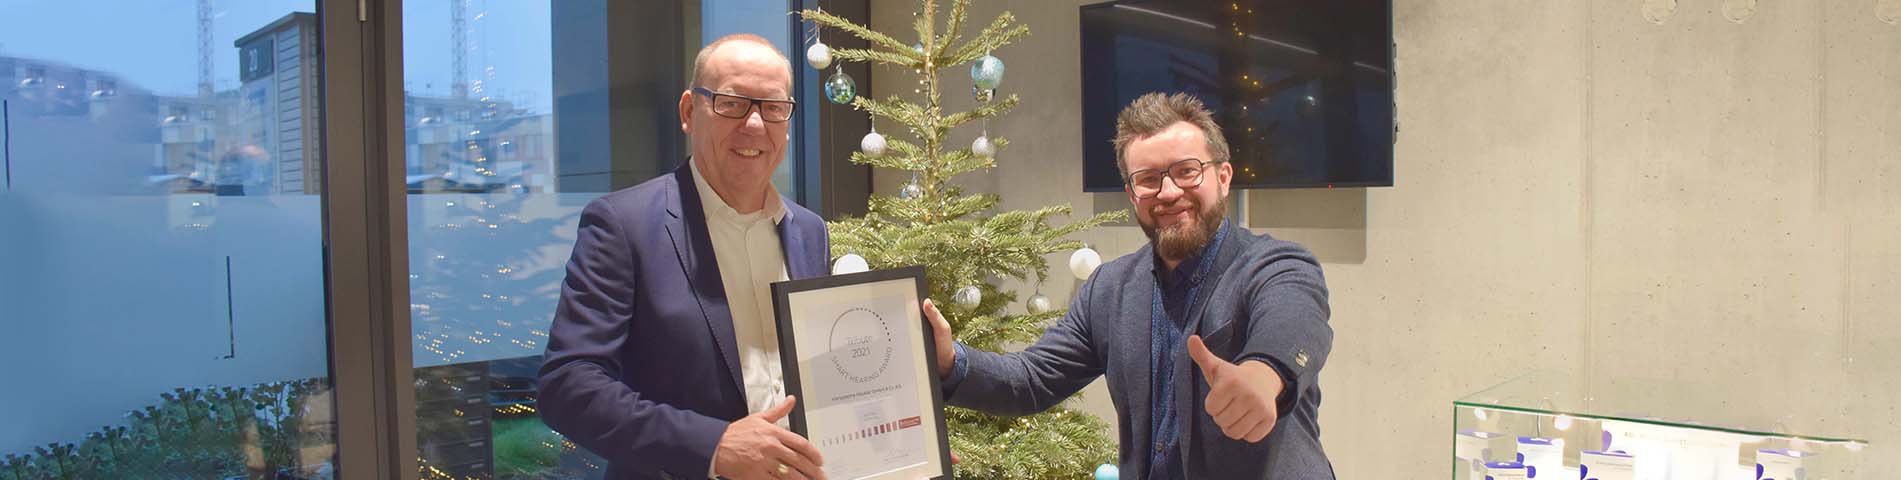 David Häusler erhält den Smart Hearing Award